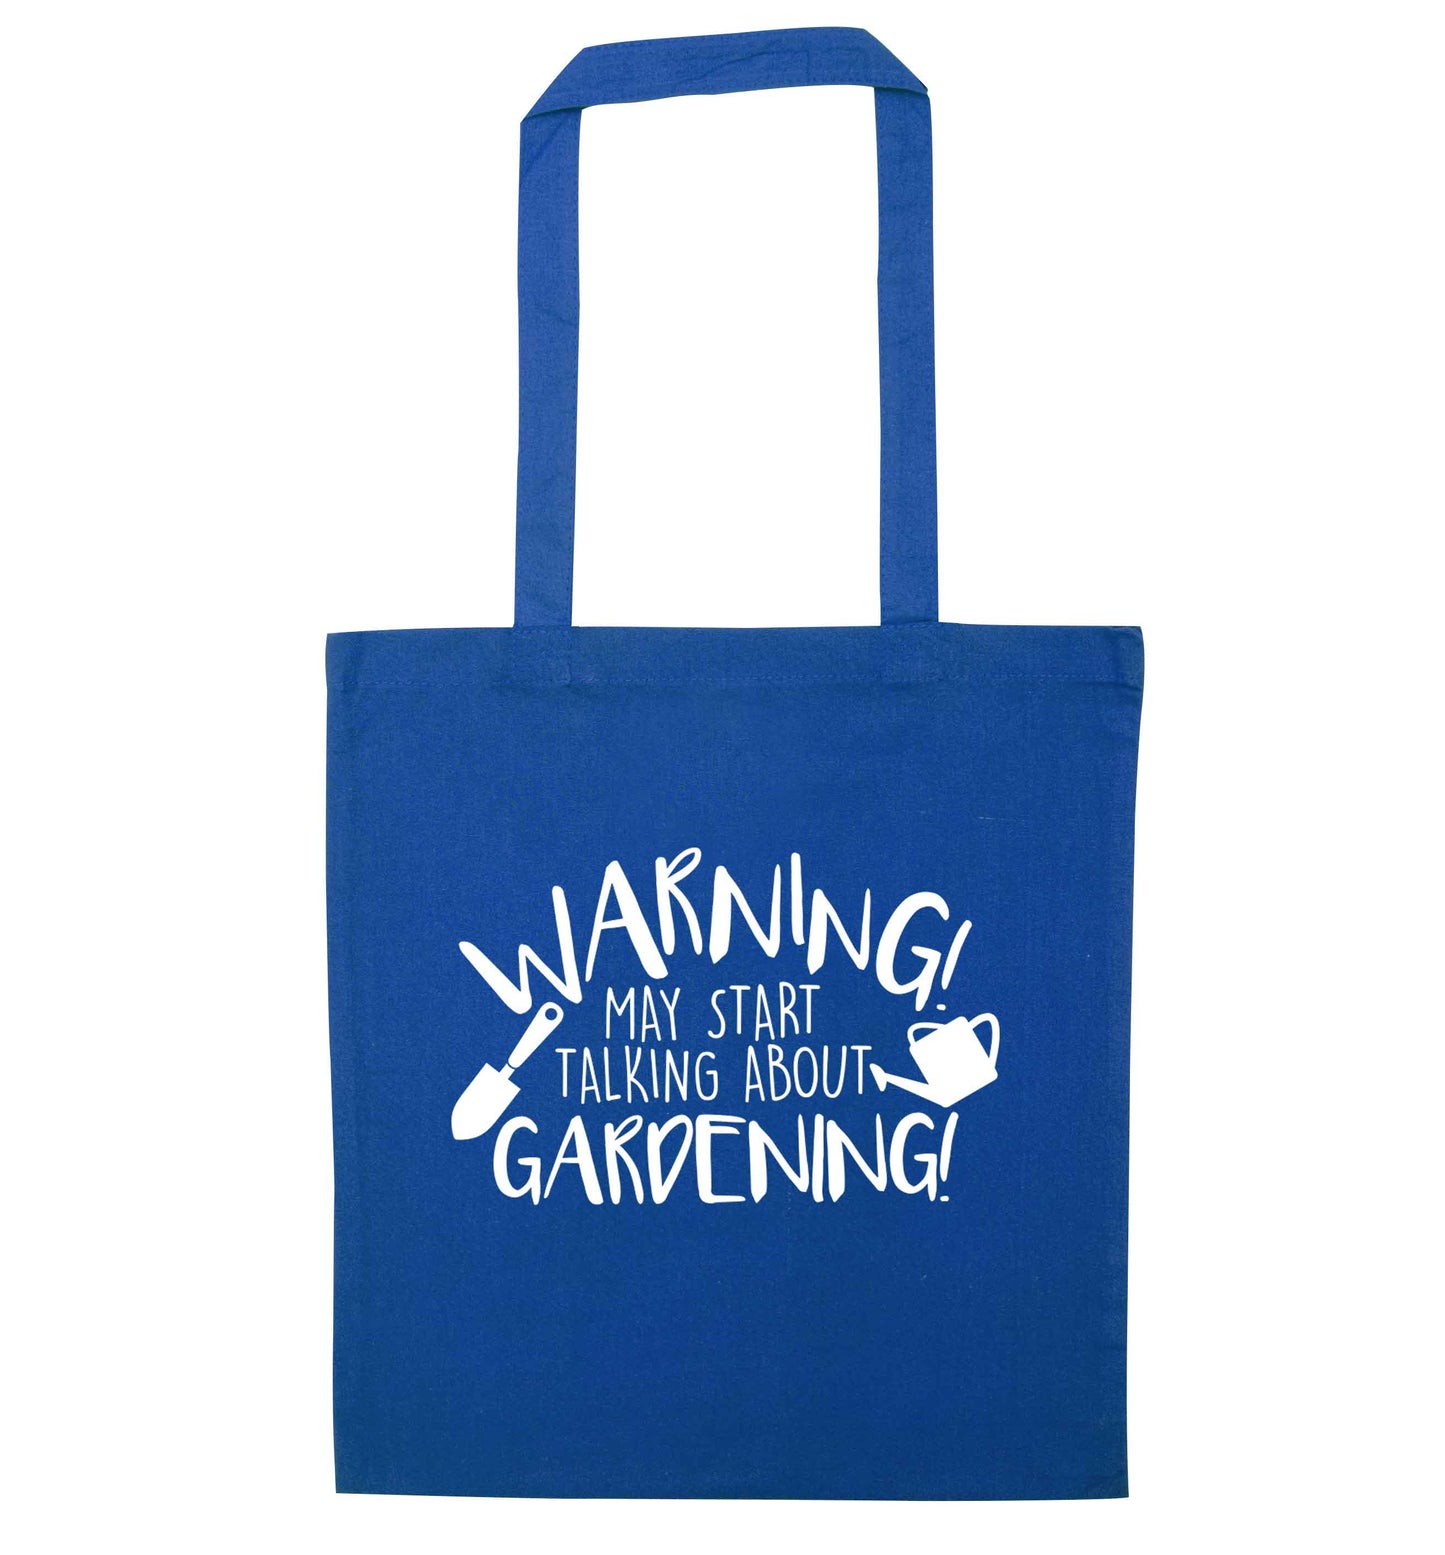 Warning may start talking about gardening blue tote bag